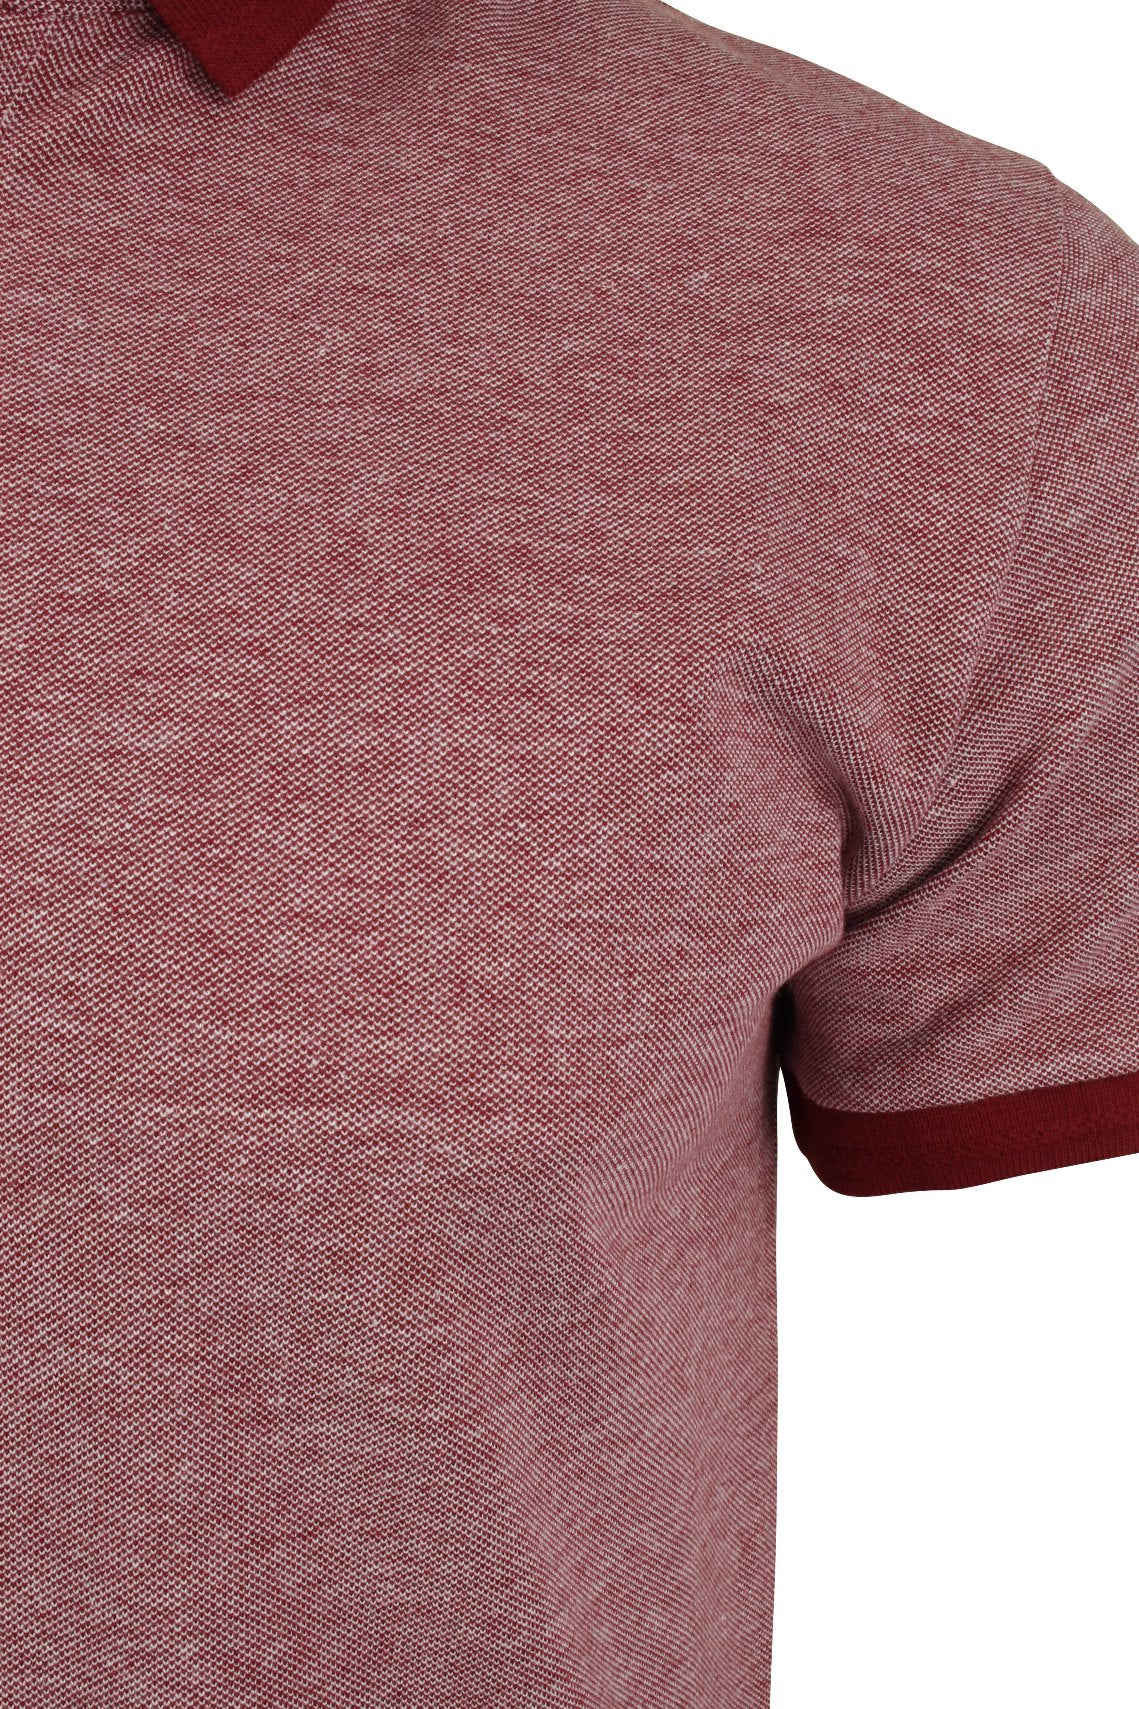 Xact Men's Birdseye Pique Polo T-Shirt Short Sleeved - 100% Cotton-2